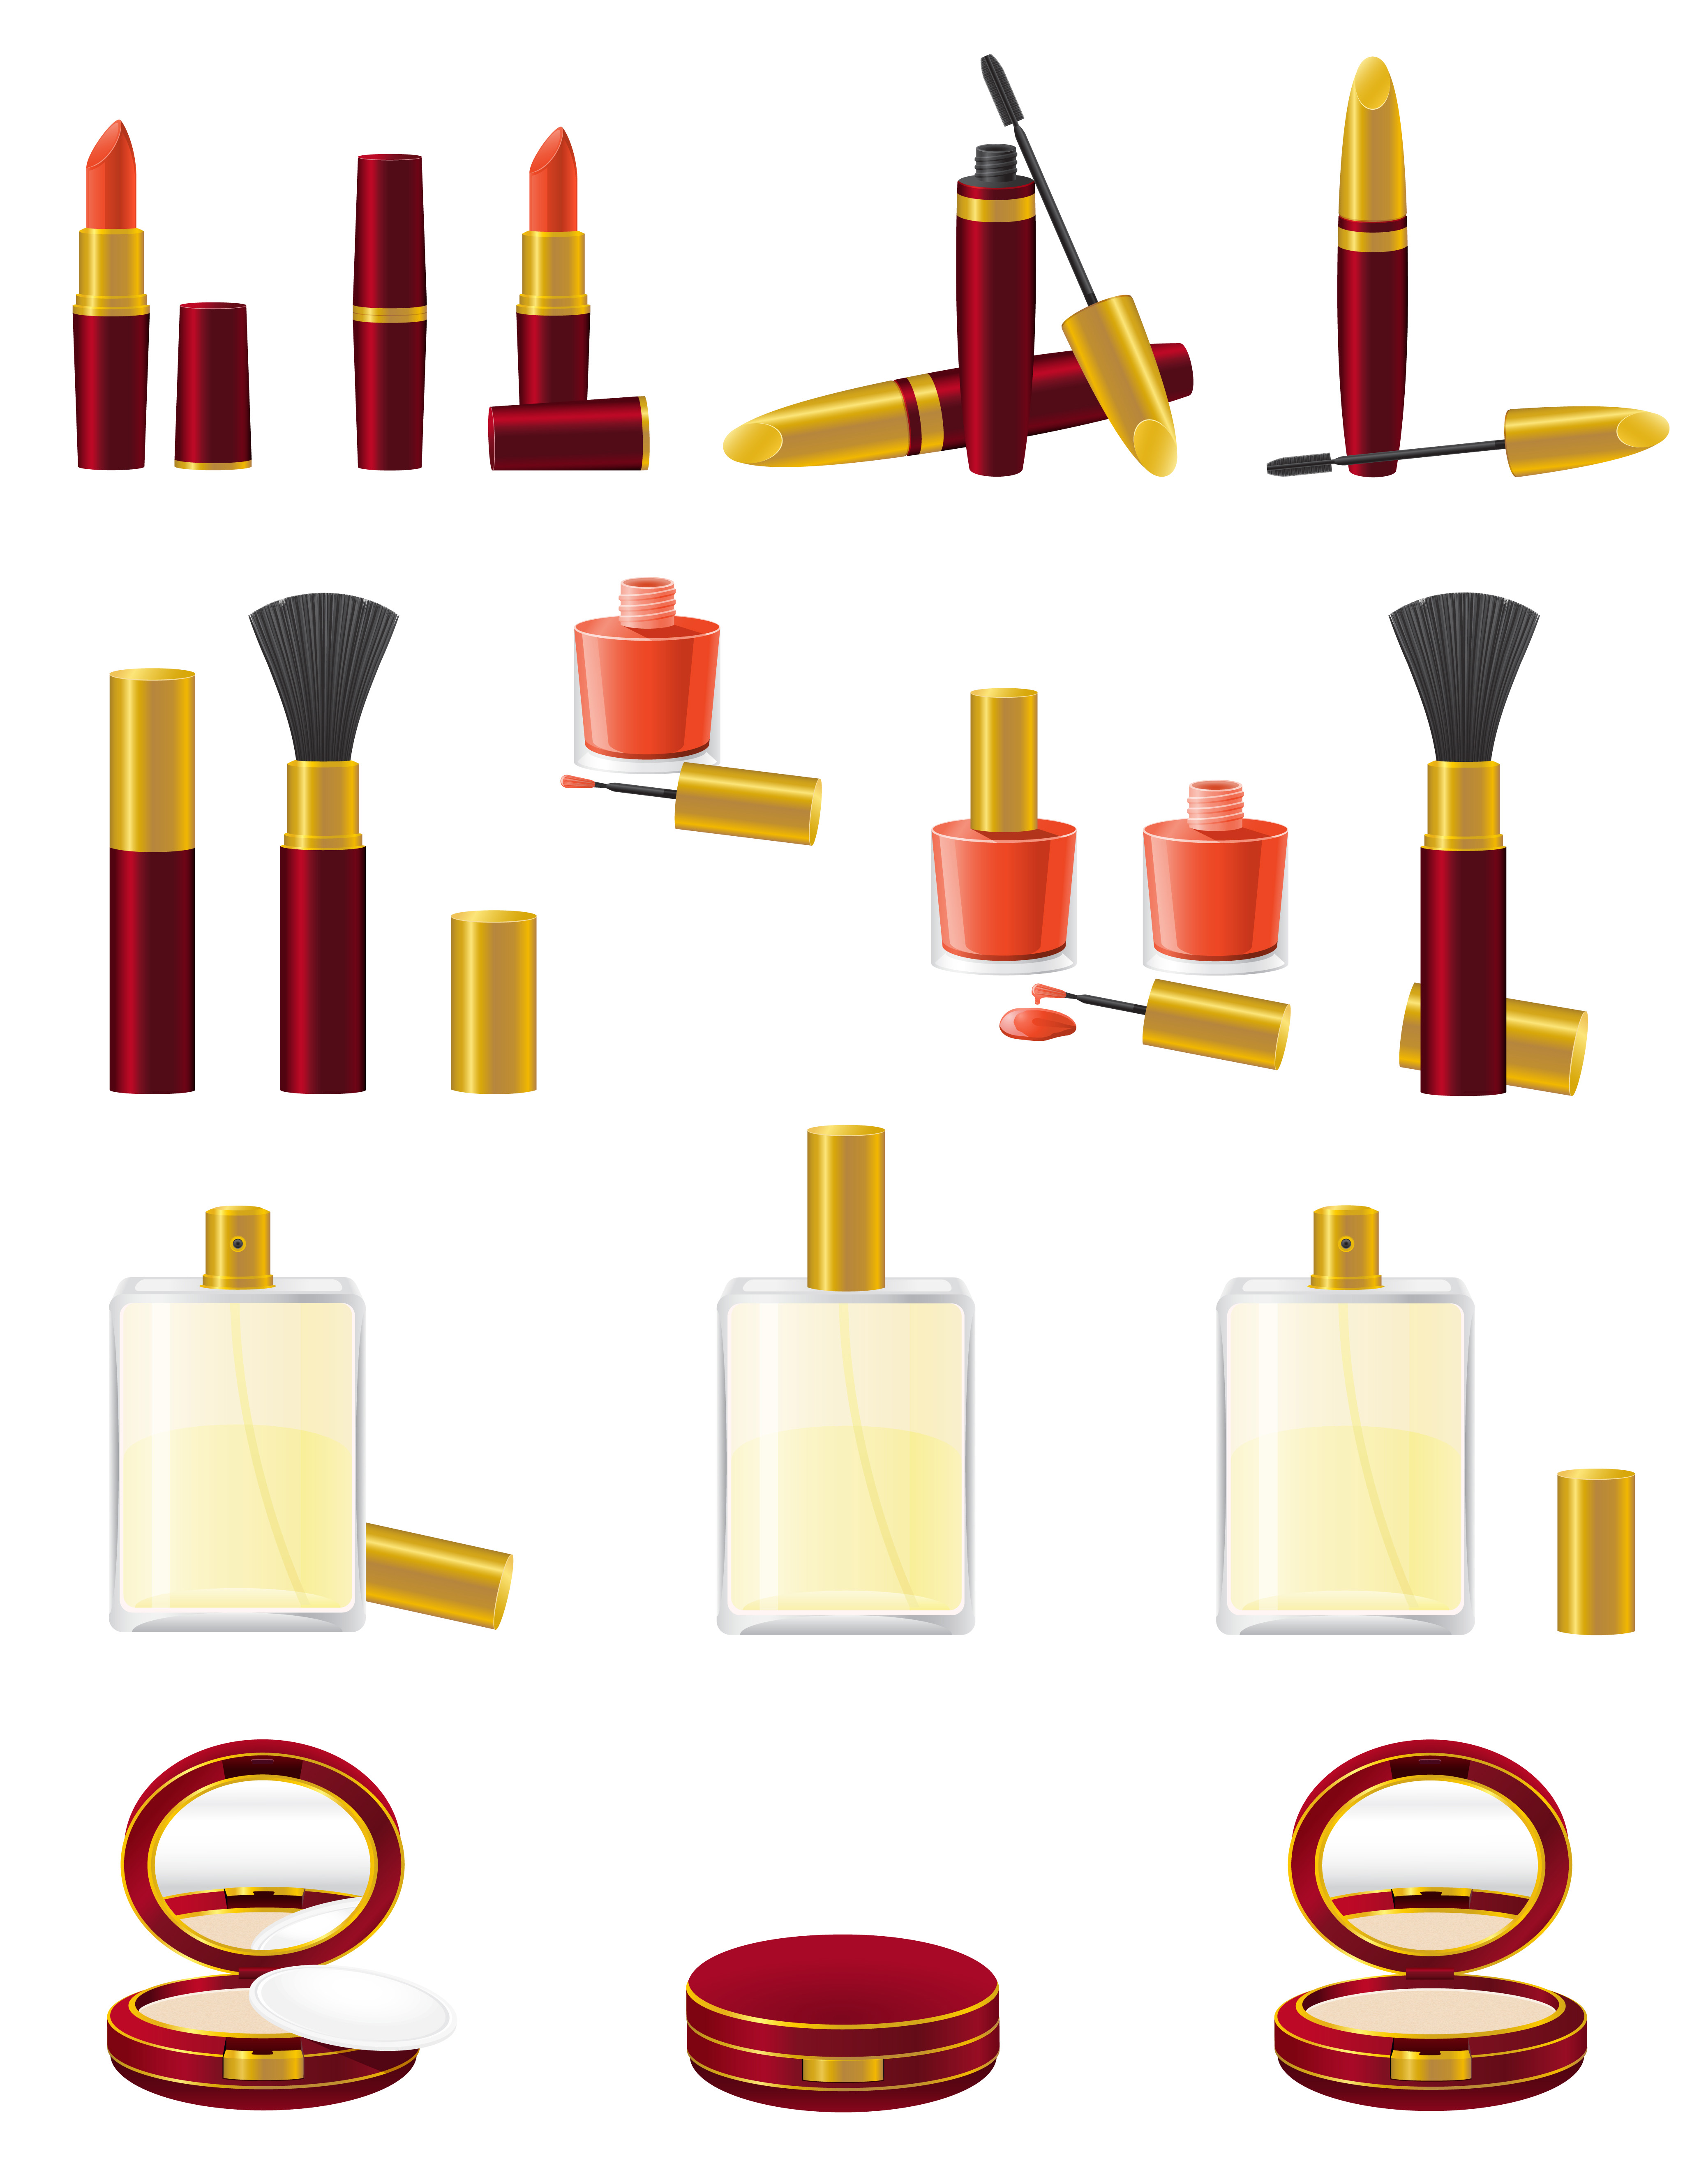 Download set icons cosmetics vector illustration - Download Free Vectors, Clipart Graphics & Vector Art